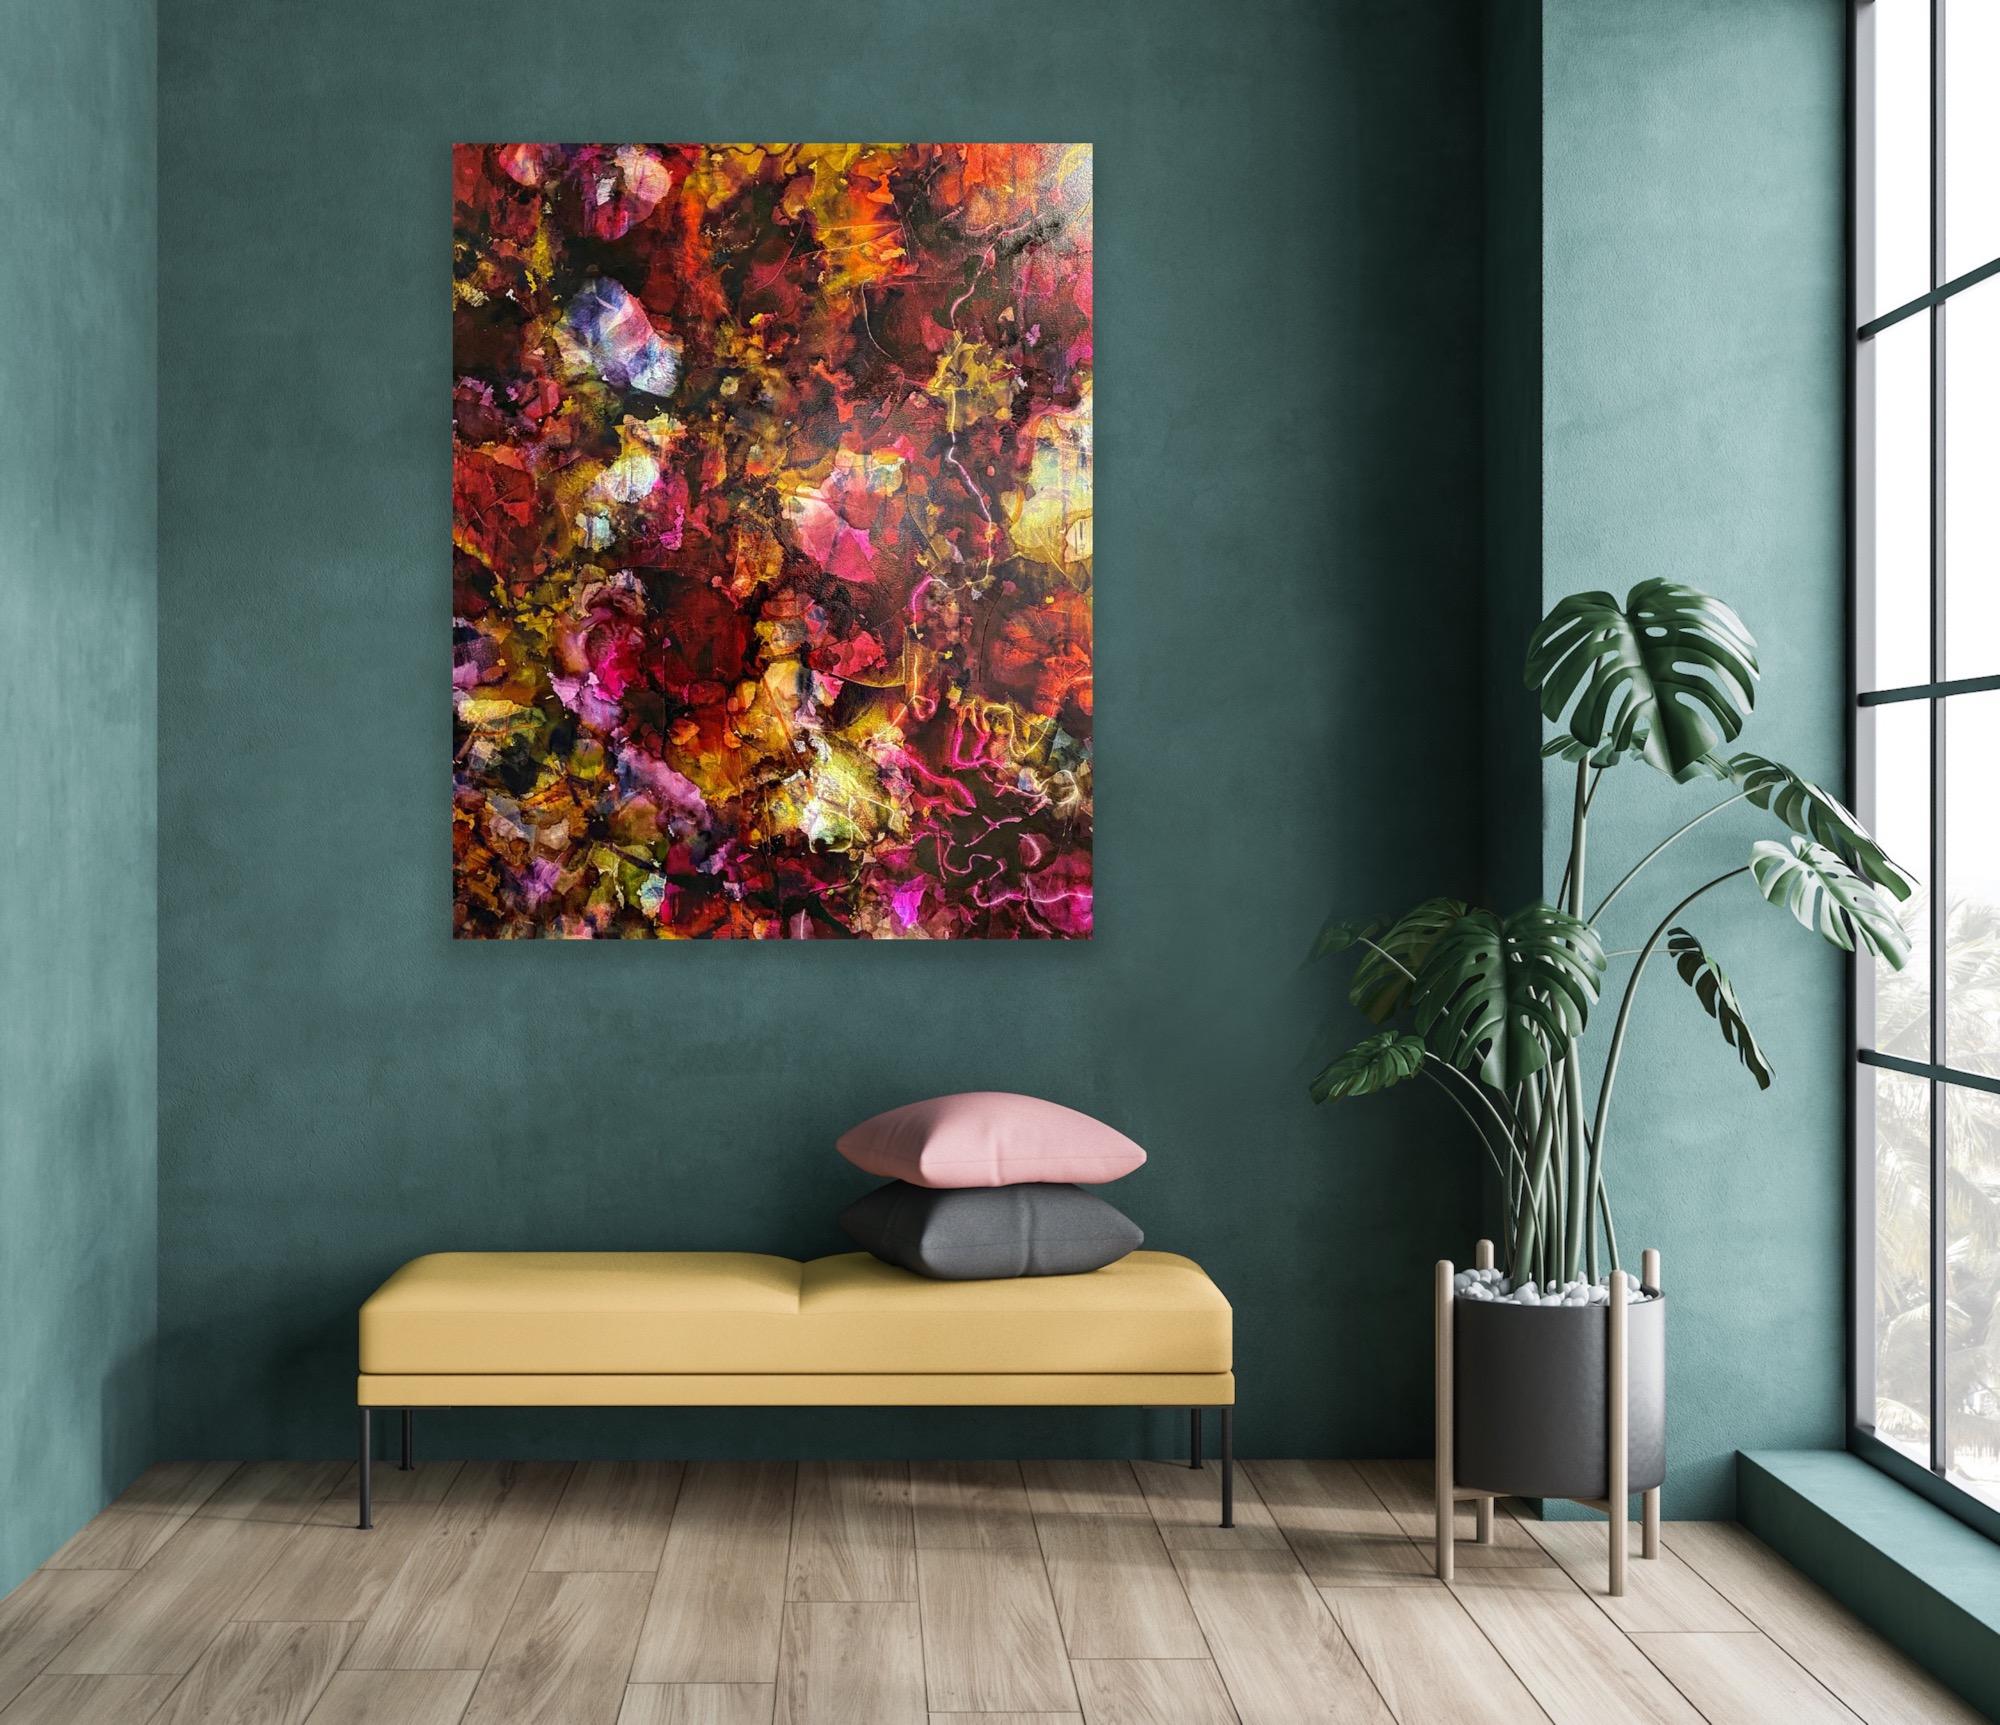 Le cœur à la maison  Techniques mixtes vibrantes, peinture d'art abstraite - Contemporain Painting par Imani Bilal